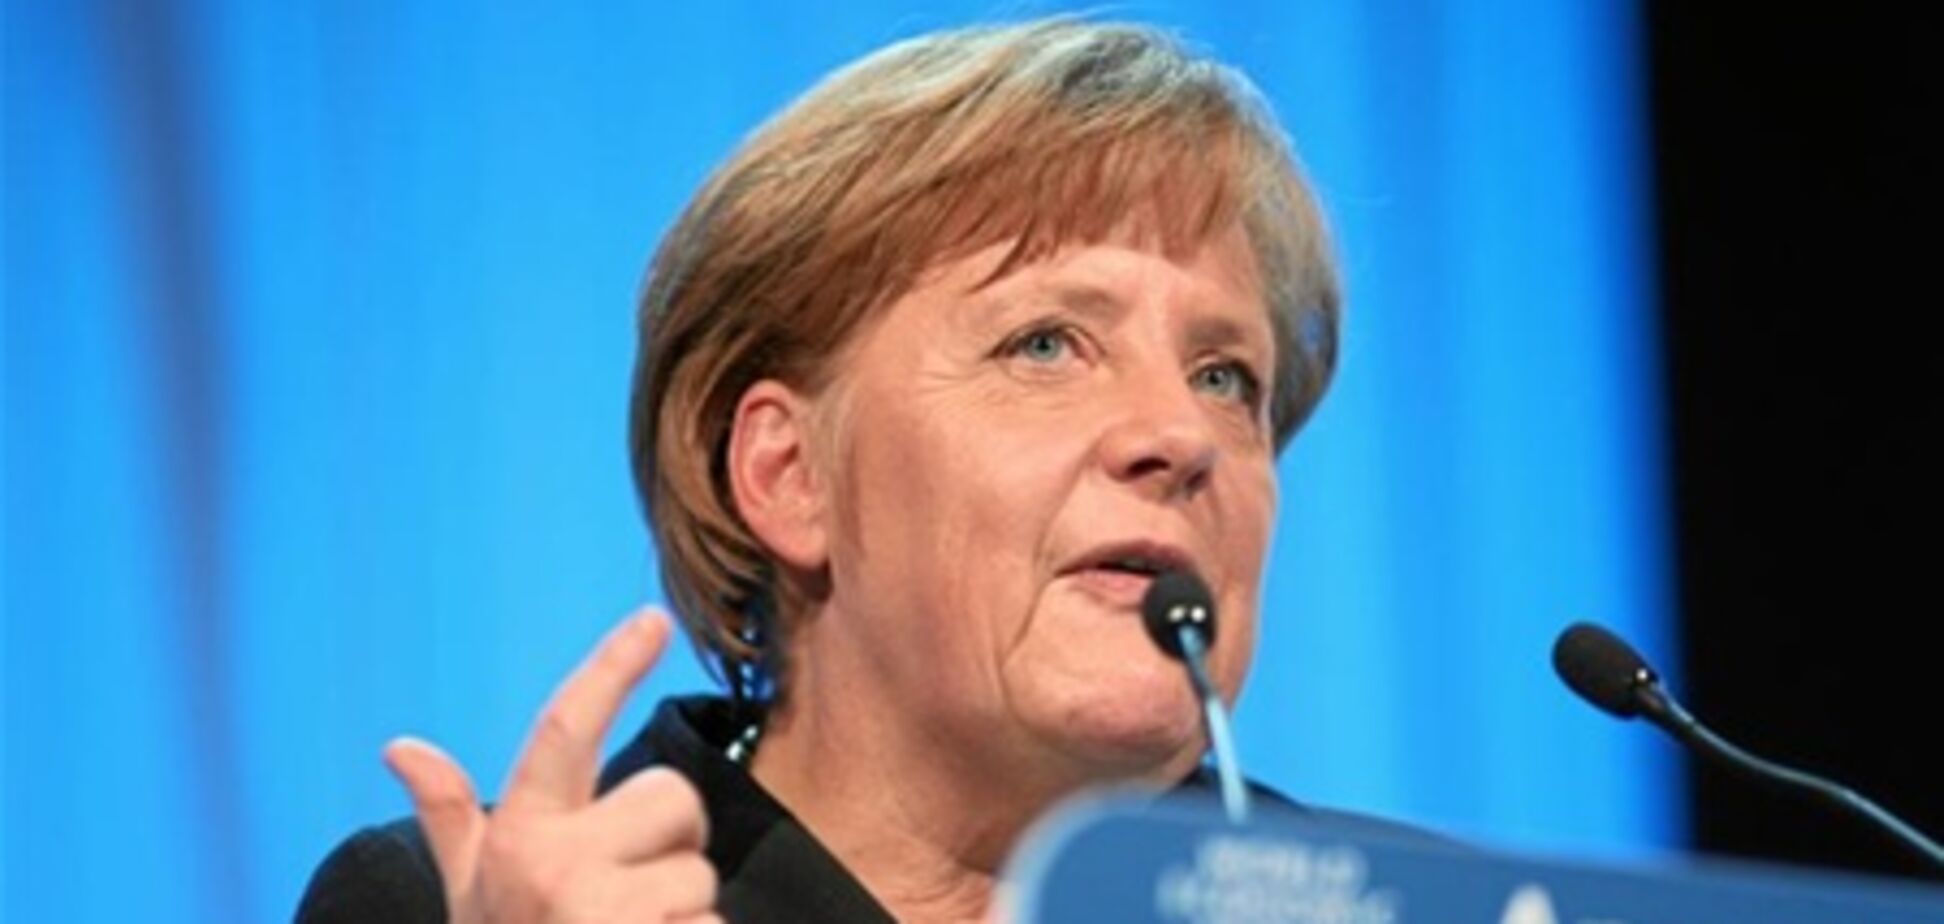 Меркель: ЕС ждет слабый рост и высокая безработица